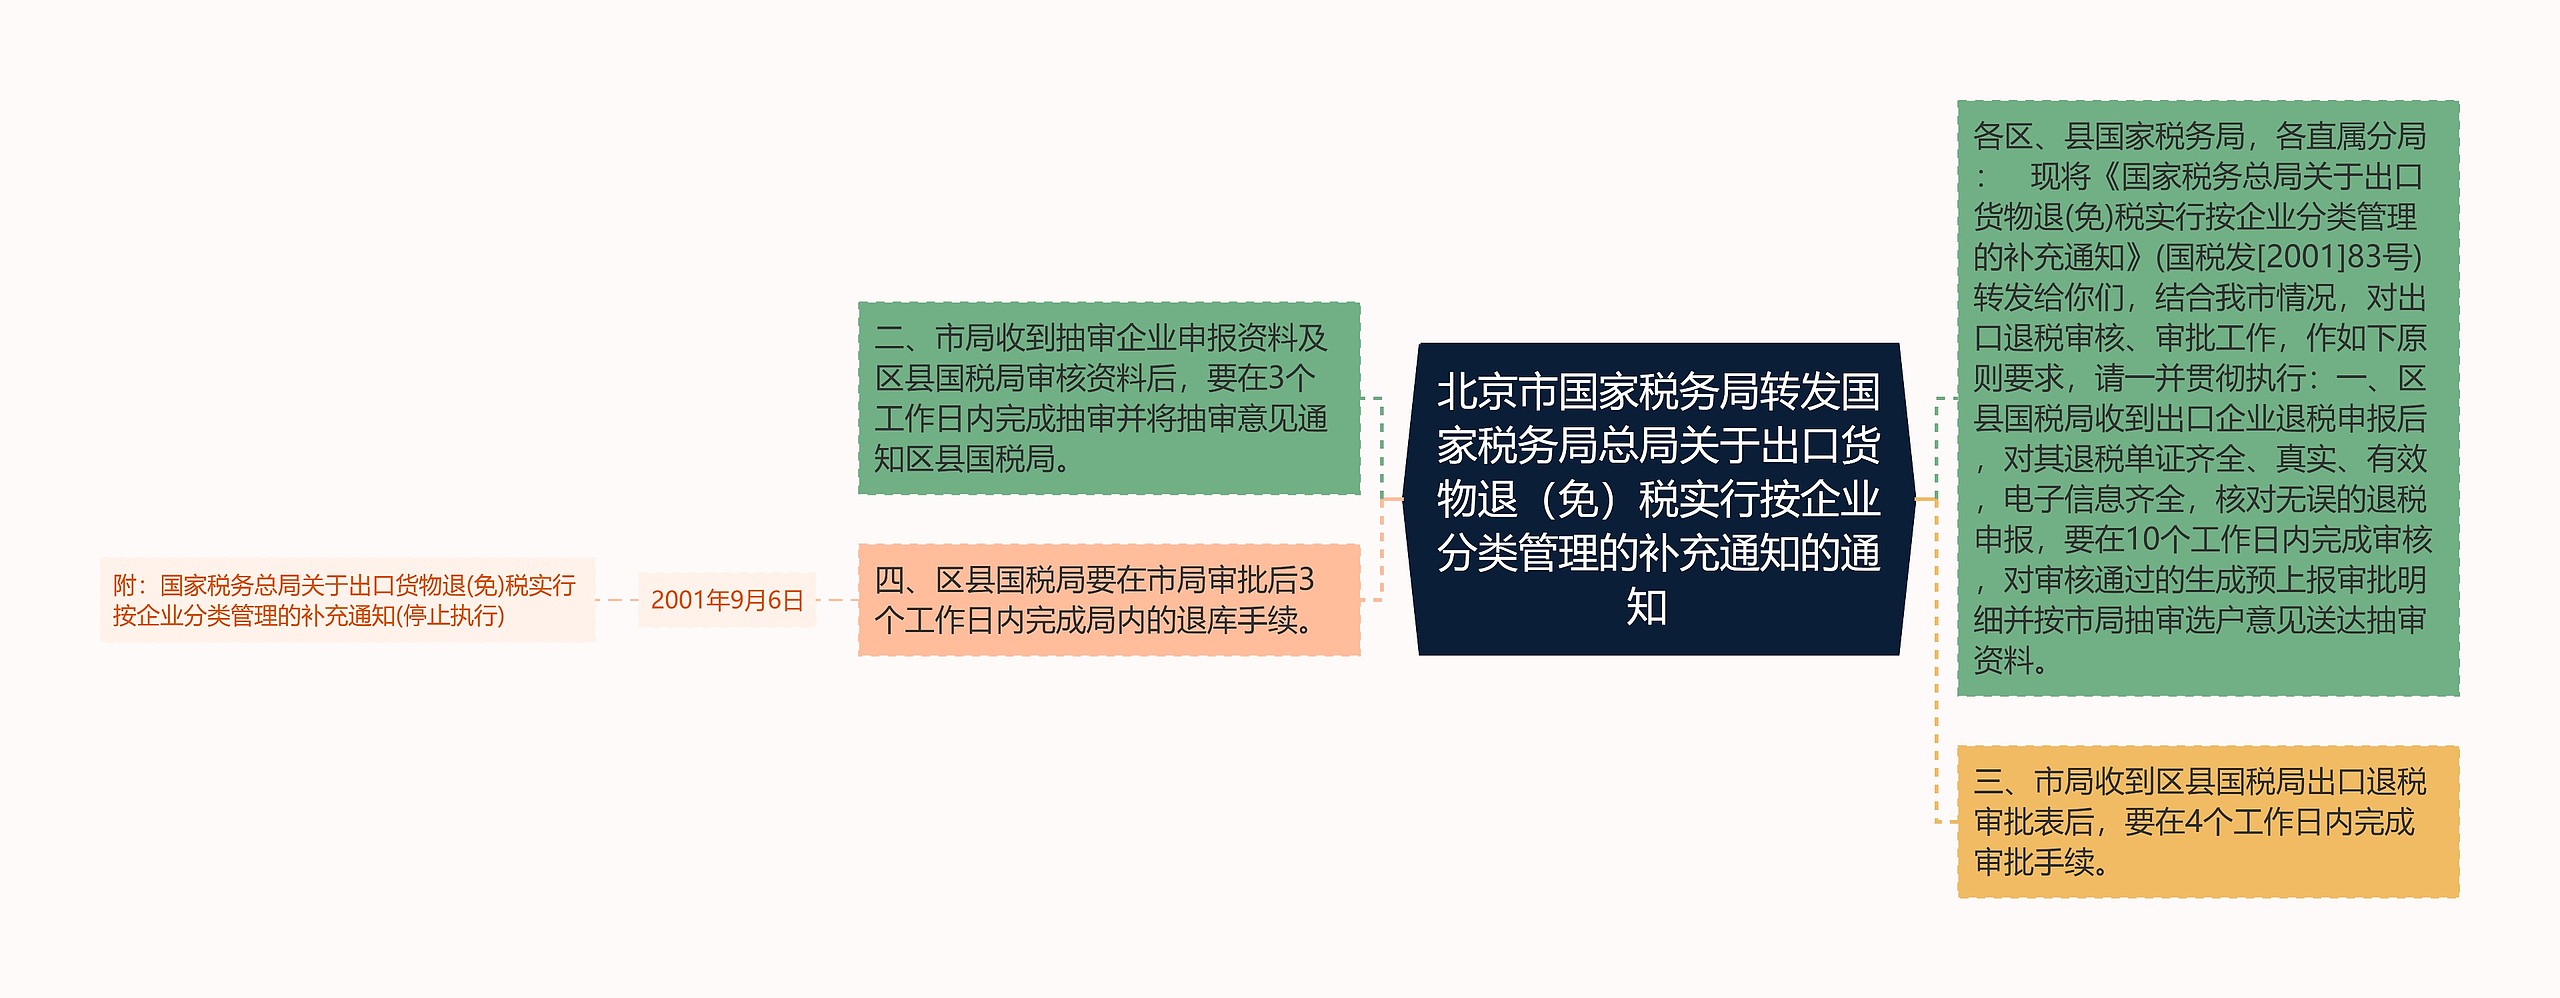 北京市国家税务局转发国家税务局总局关于出口货物退（免）税实行按企业分类管理的补充通知的通知  